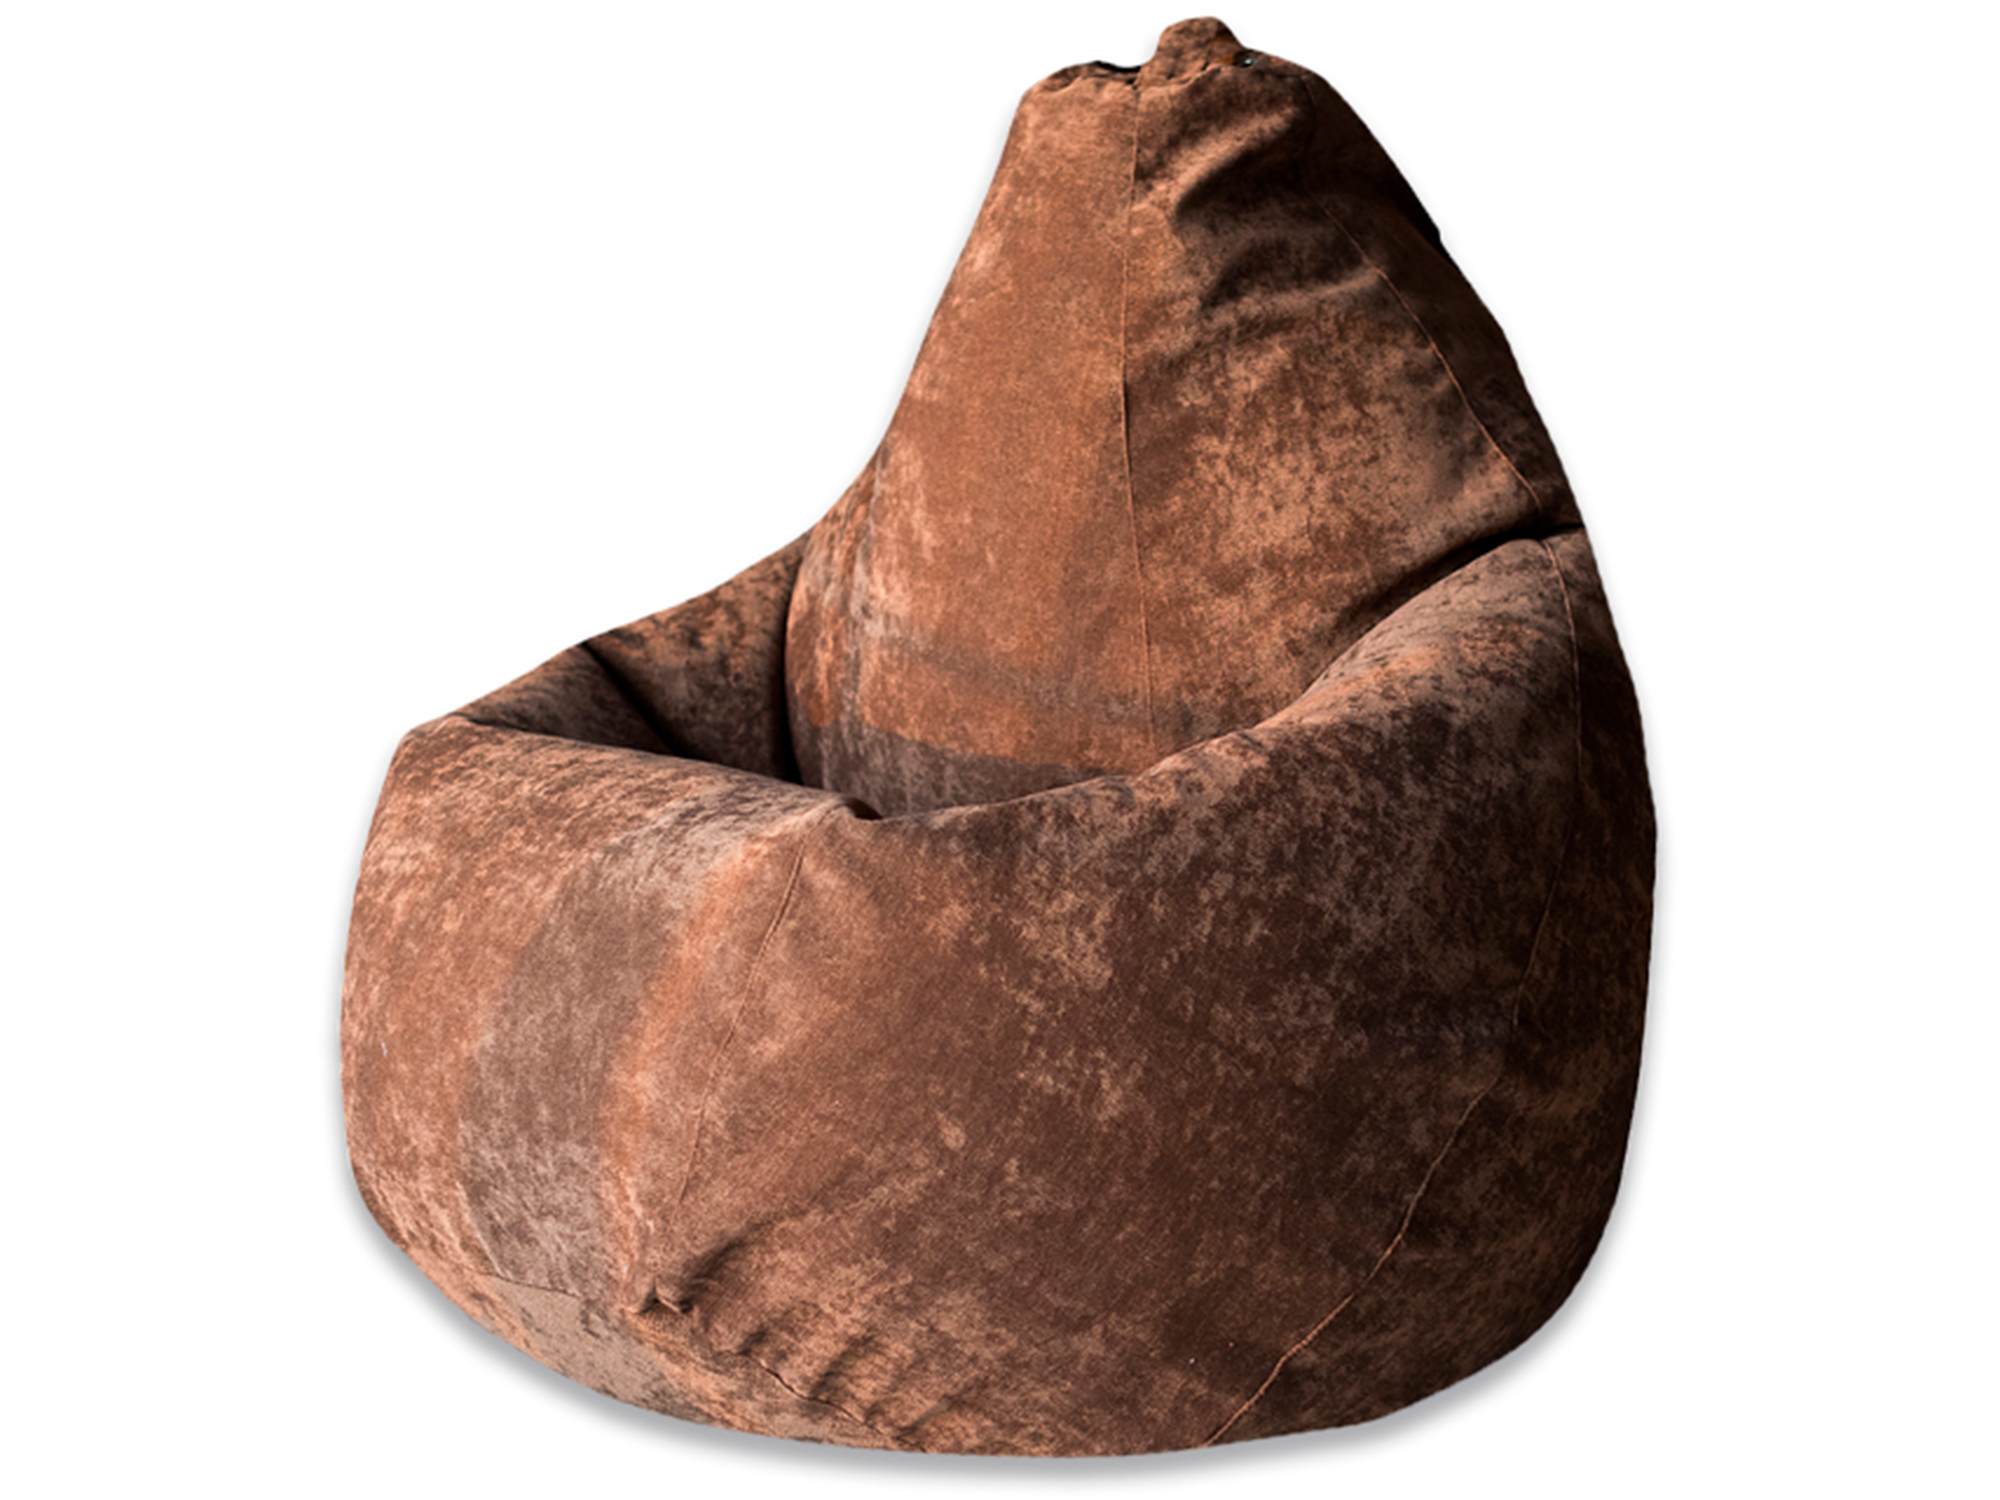 кресло мешок коричневого цвета